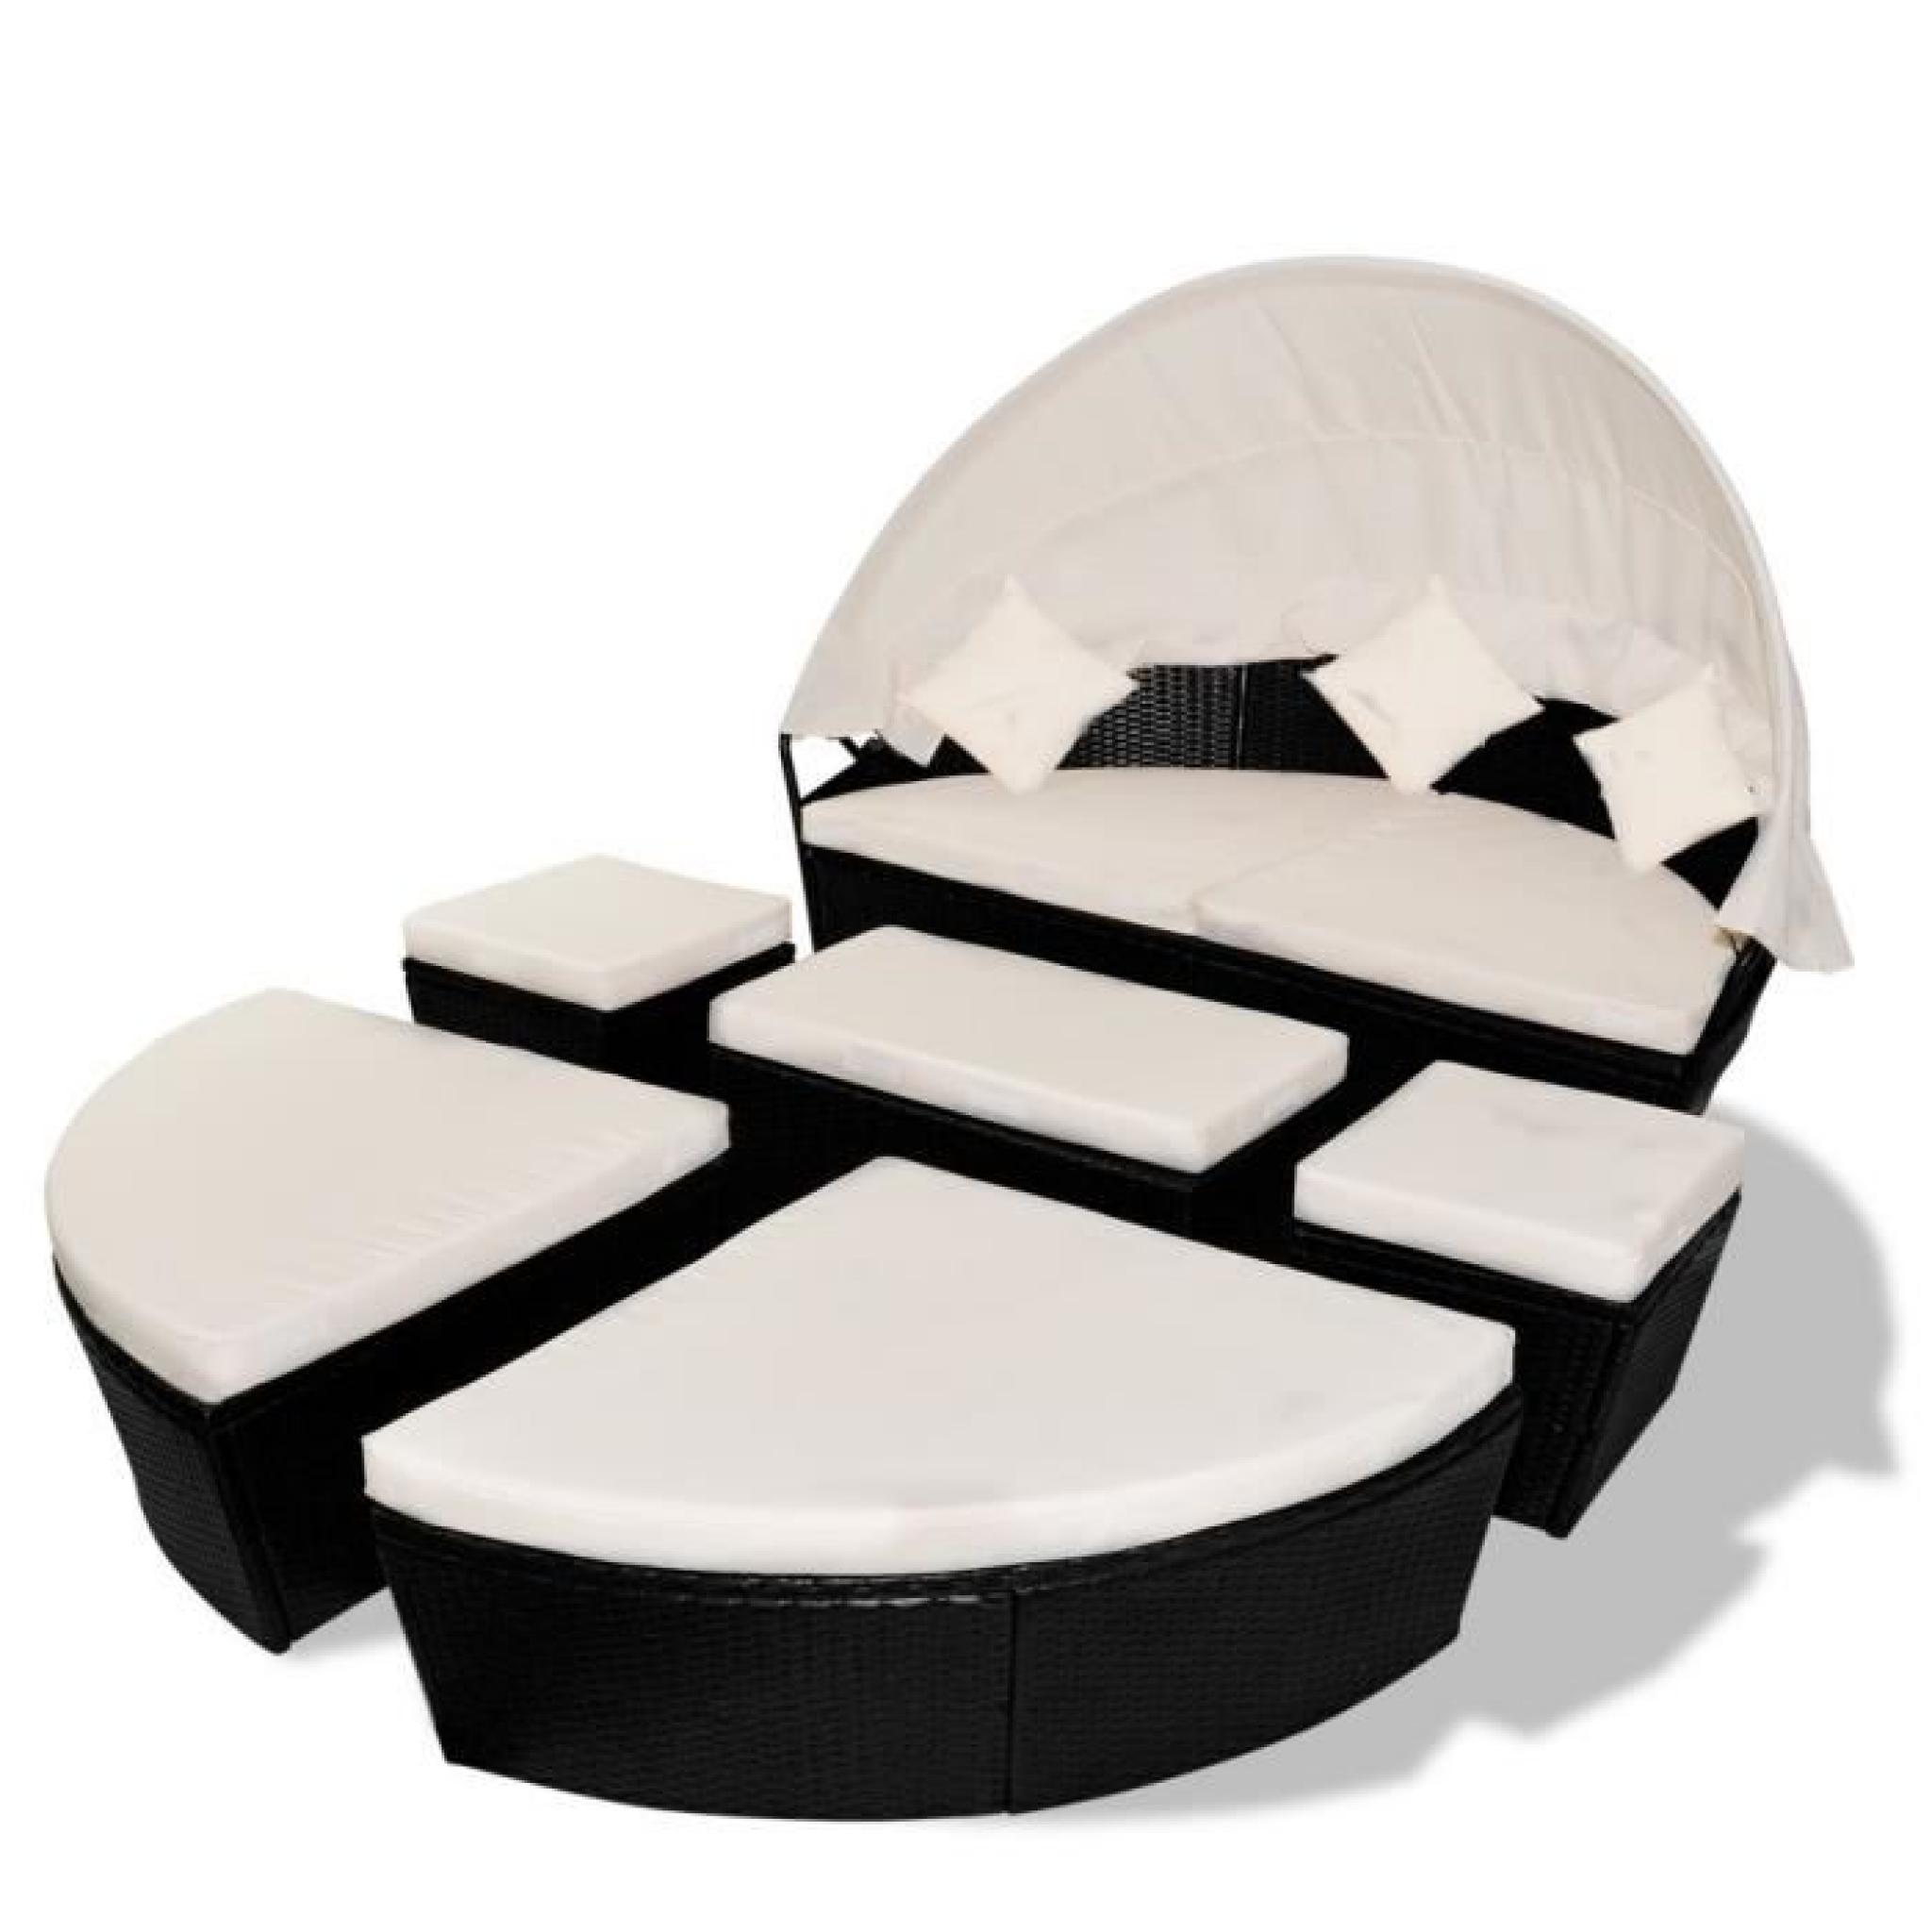 Ensembles de meubles d'exterieur Salon de jardin/bain de soleil noir 2 en 1 en polyrotin avec dais